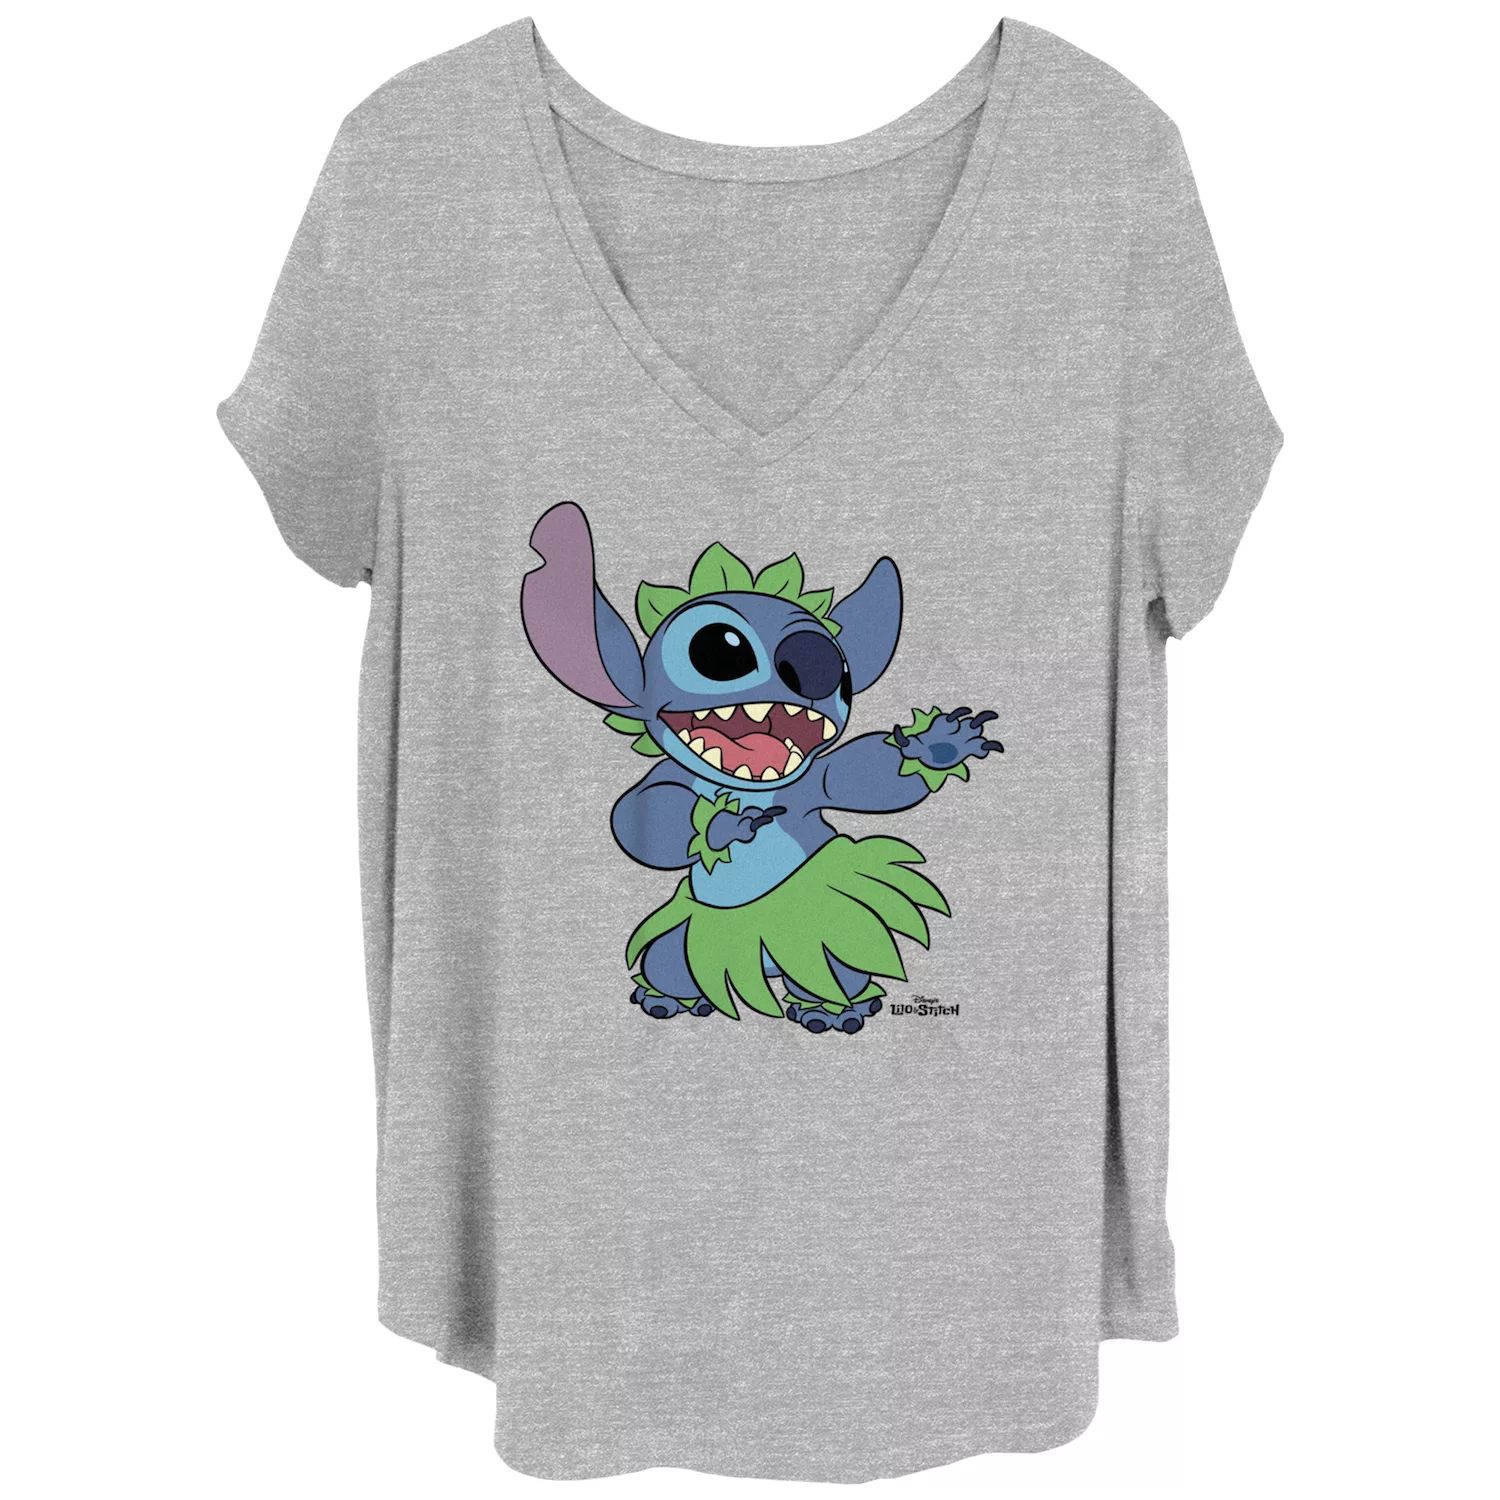 Детская гавайская футболка больших размеров с рисунком Lilo & Stitch Disney's Lilo & Stitch Disney